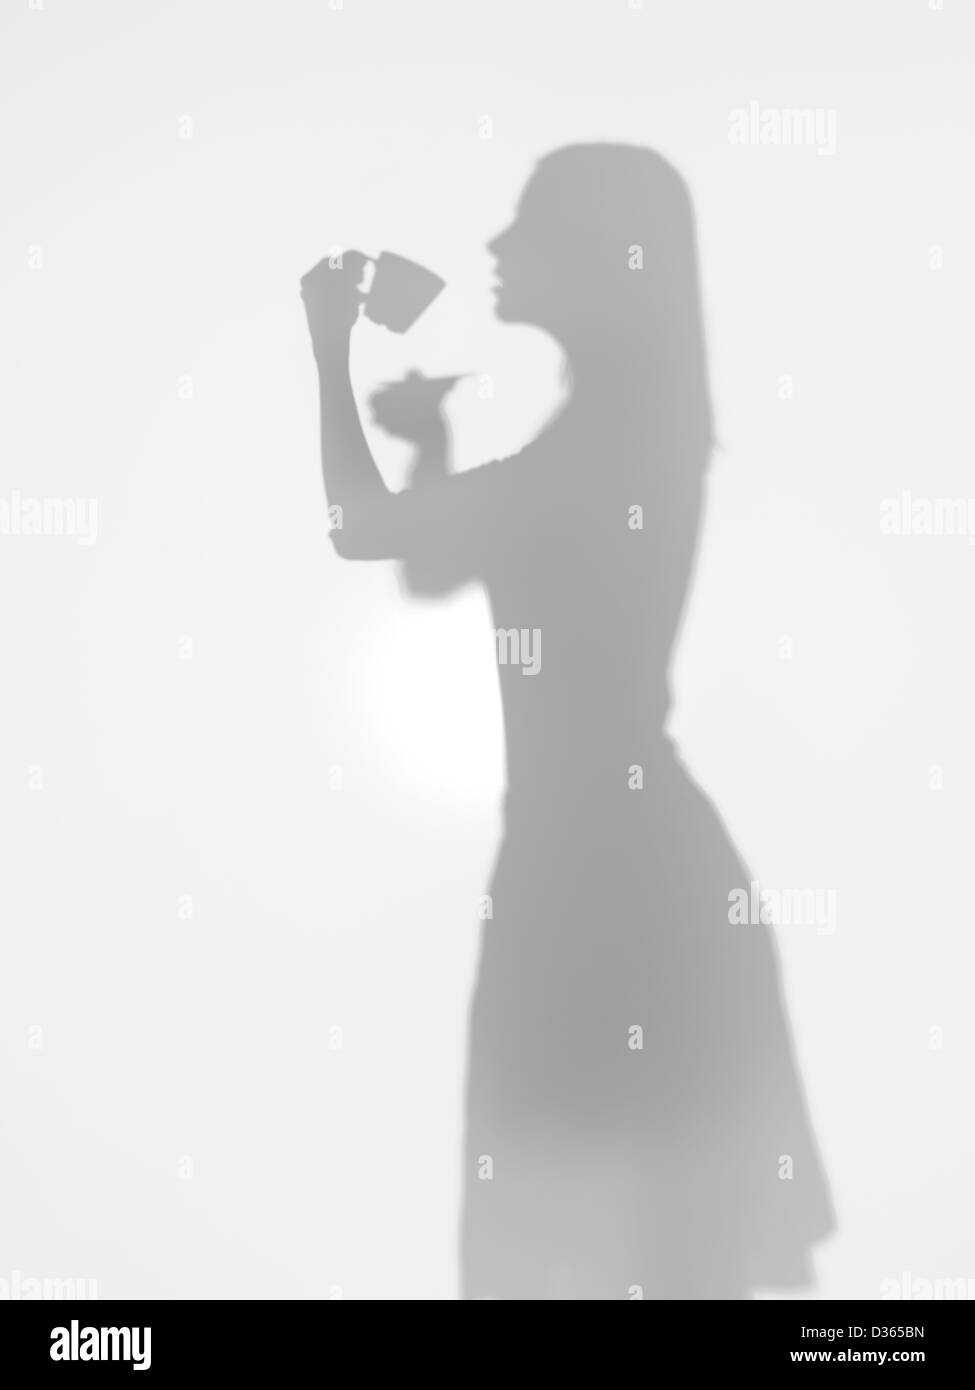 Vue de côté de silhouette de femme de boire une tasse de café derrière une surface diffuse Banque D'Images